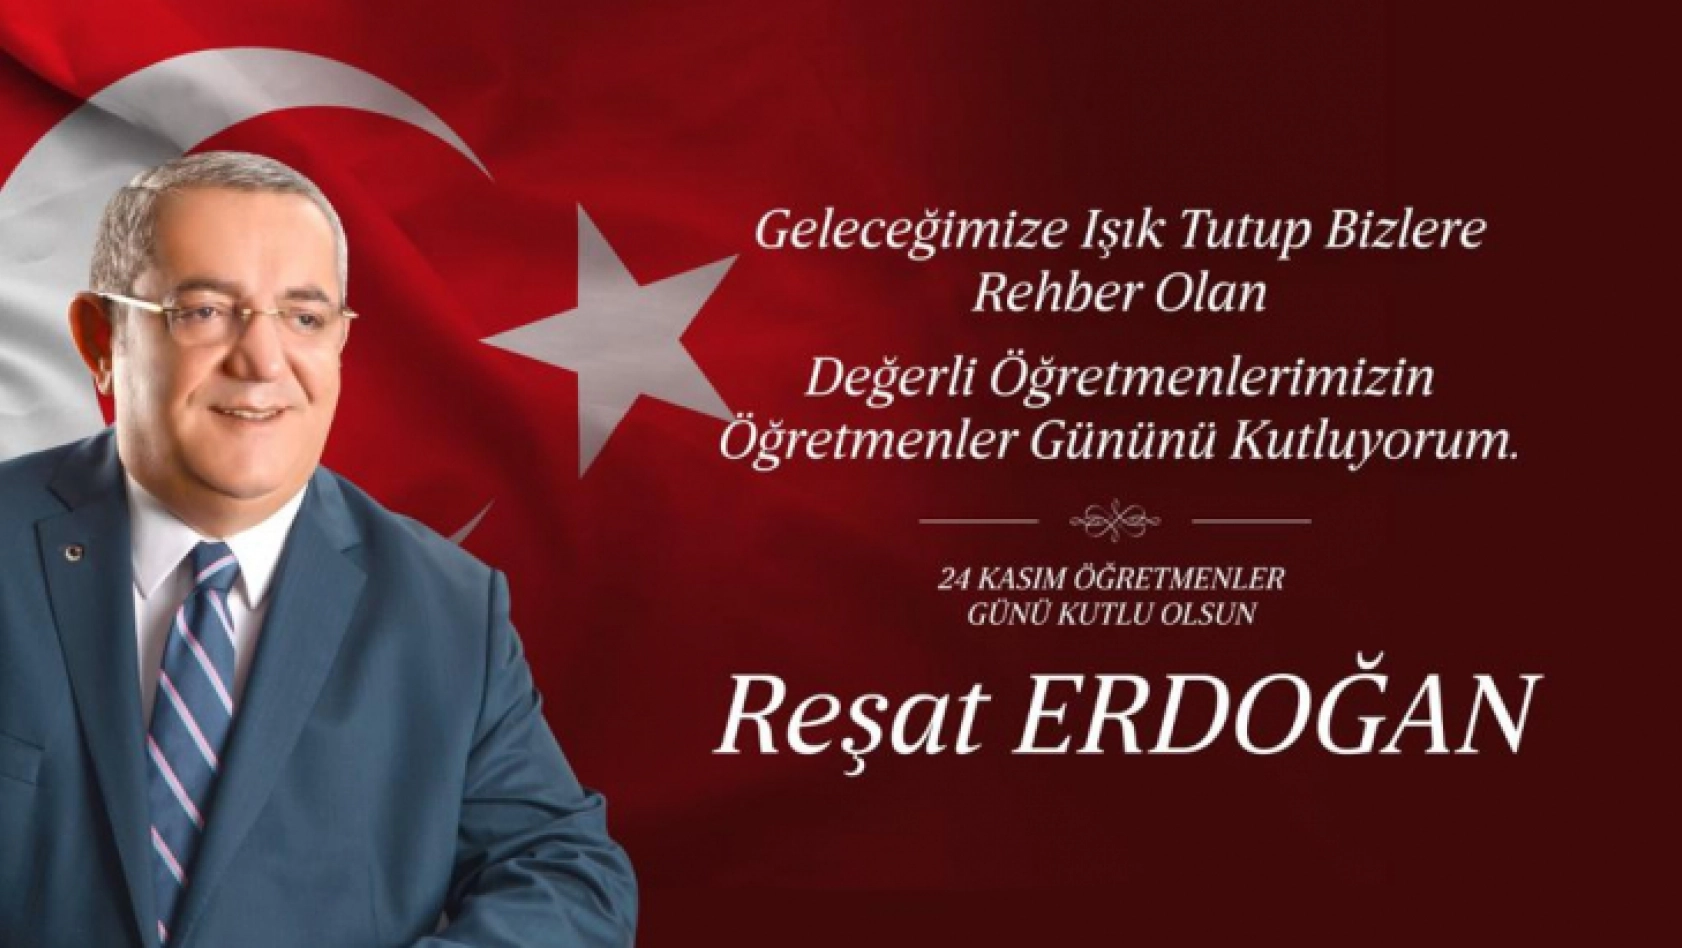 Reşat Erdoğan, Öğretmenlerimize minnet borçluyuz